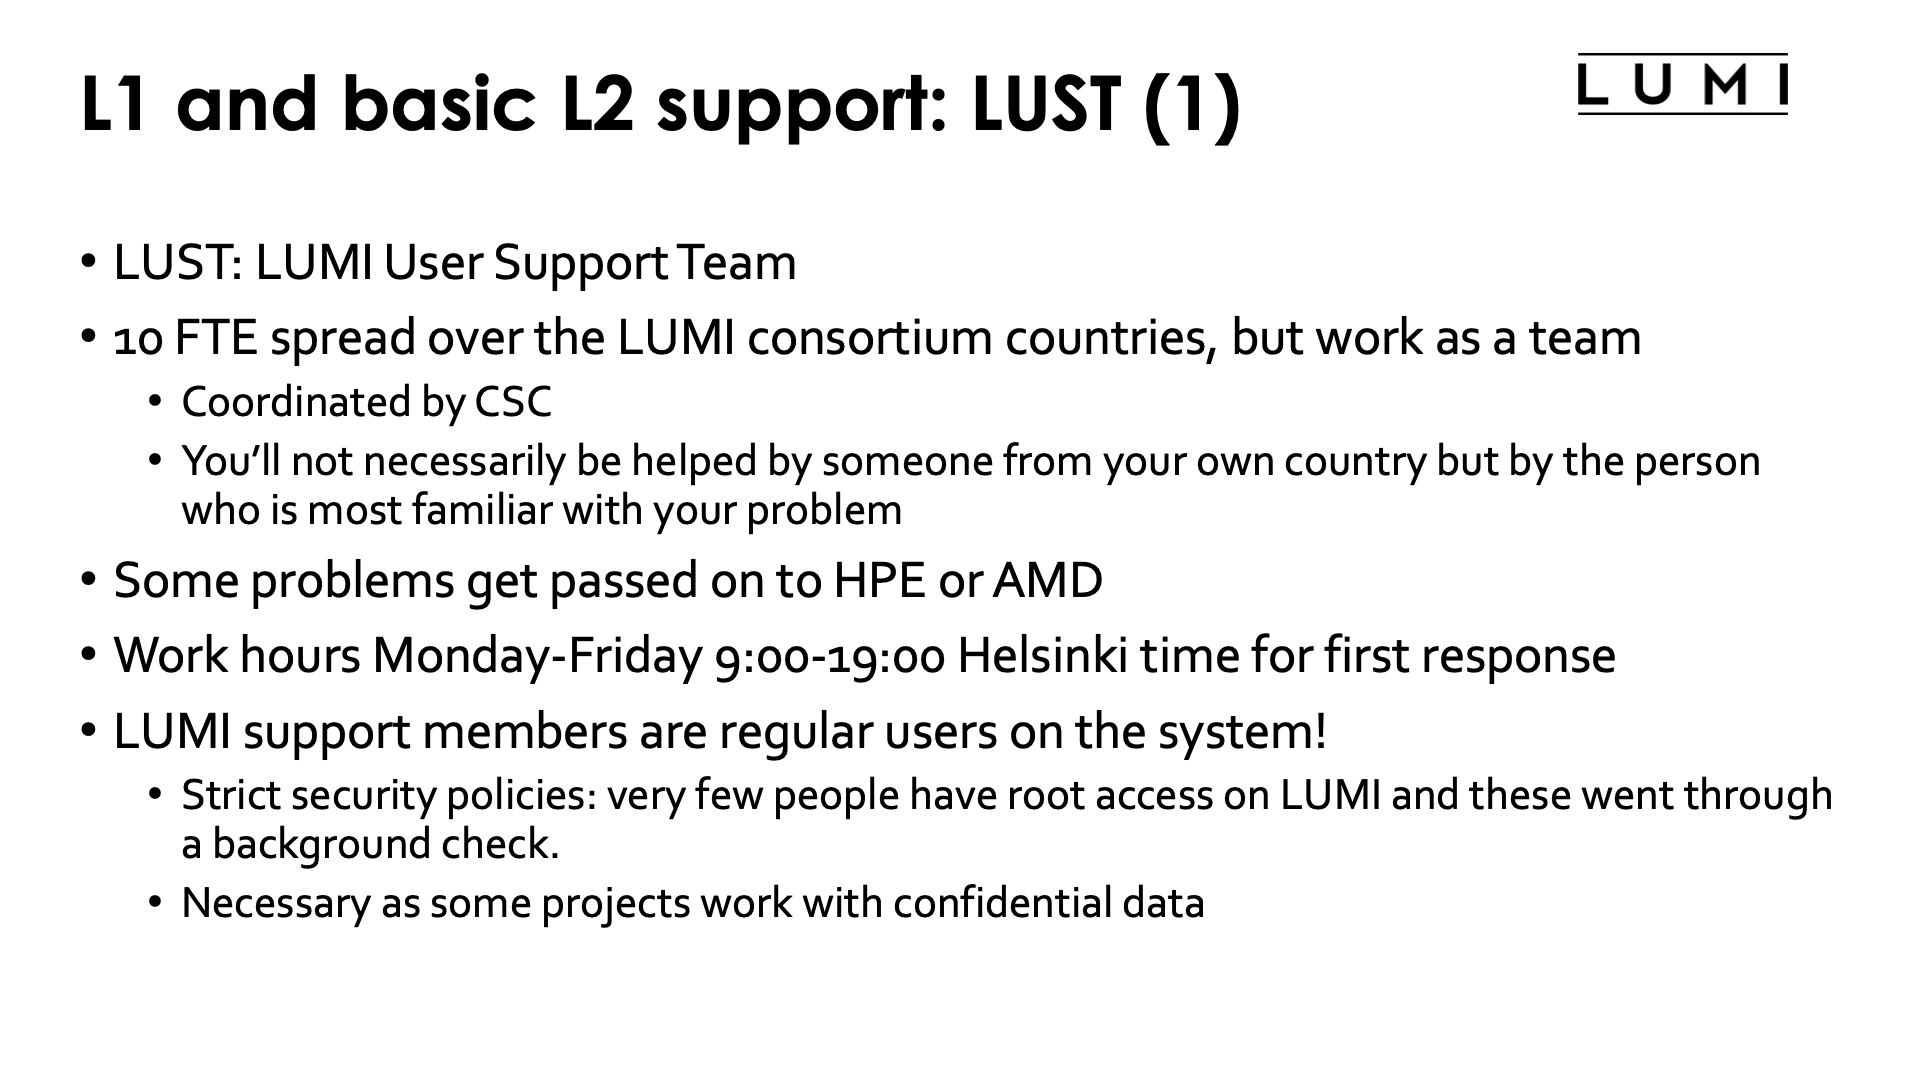 L1 and basic L2: LUST (1)